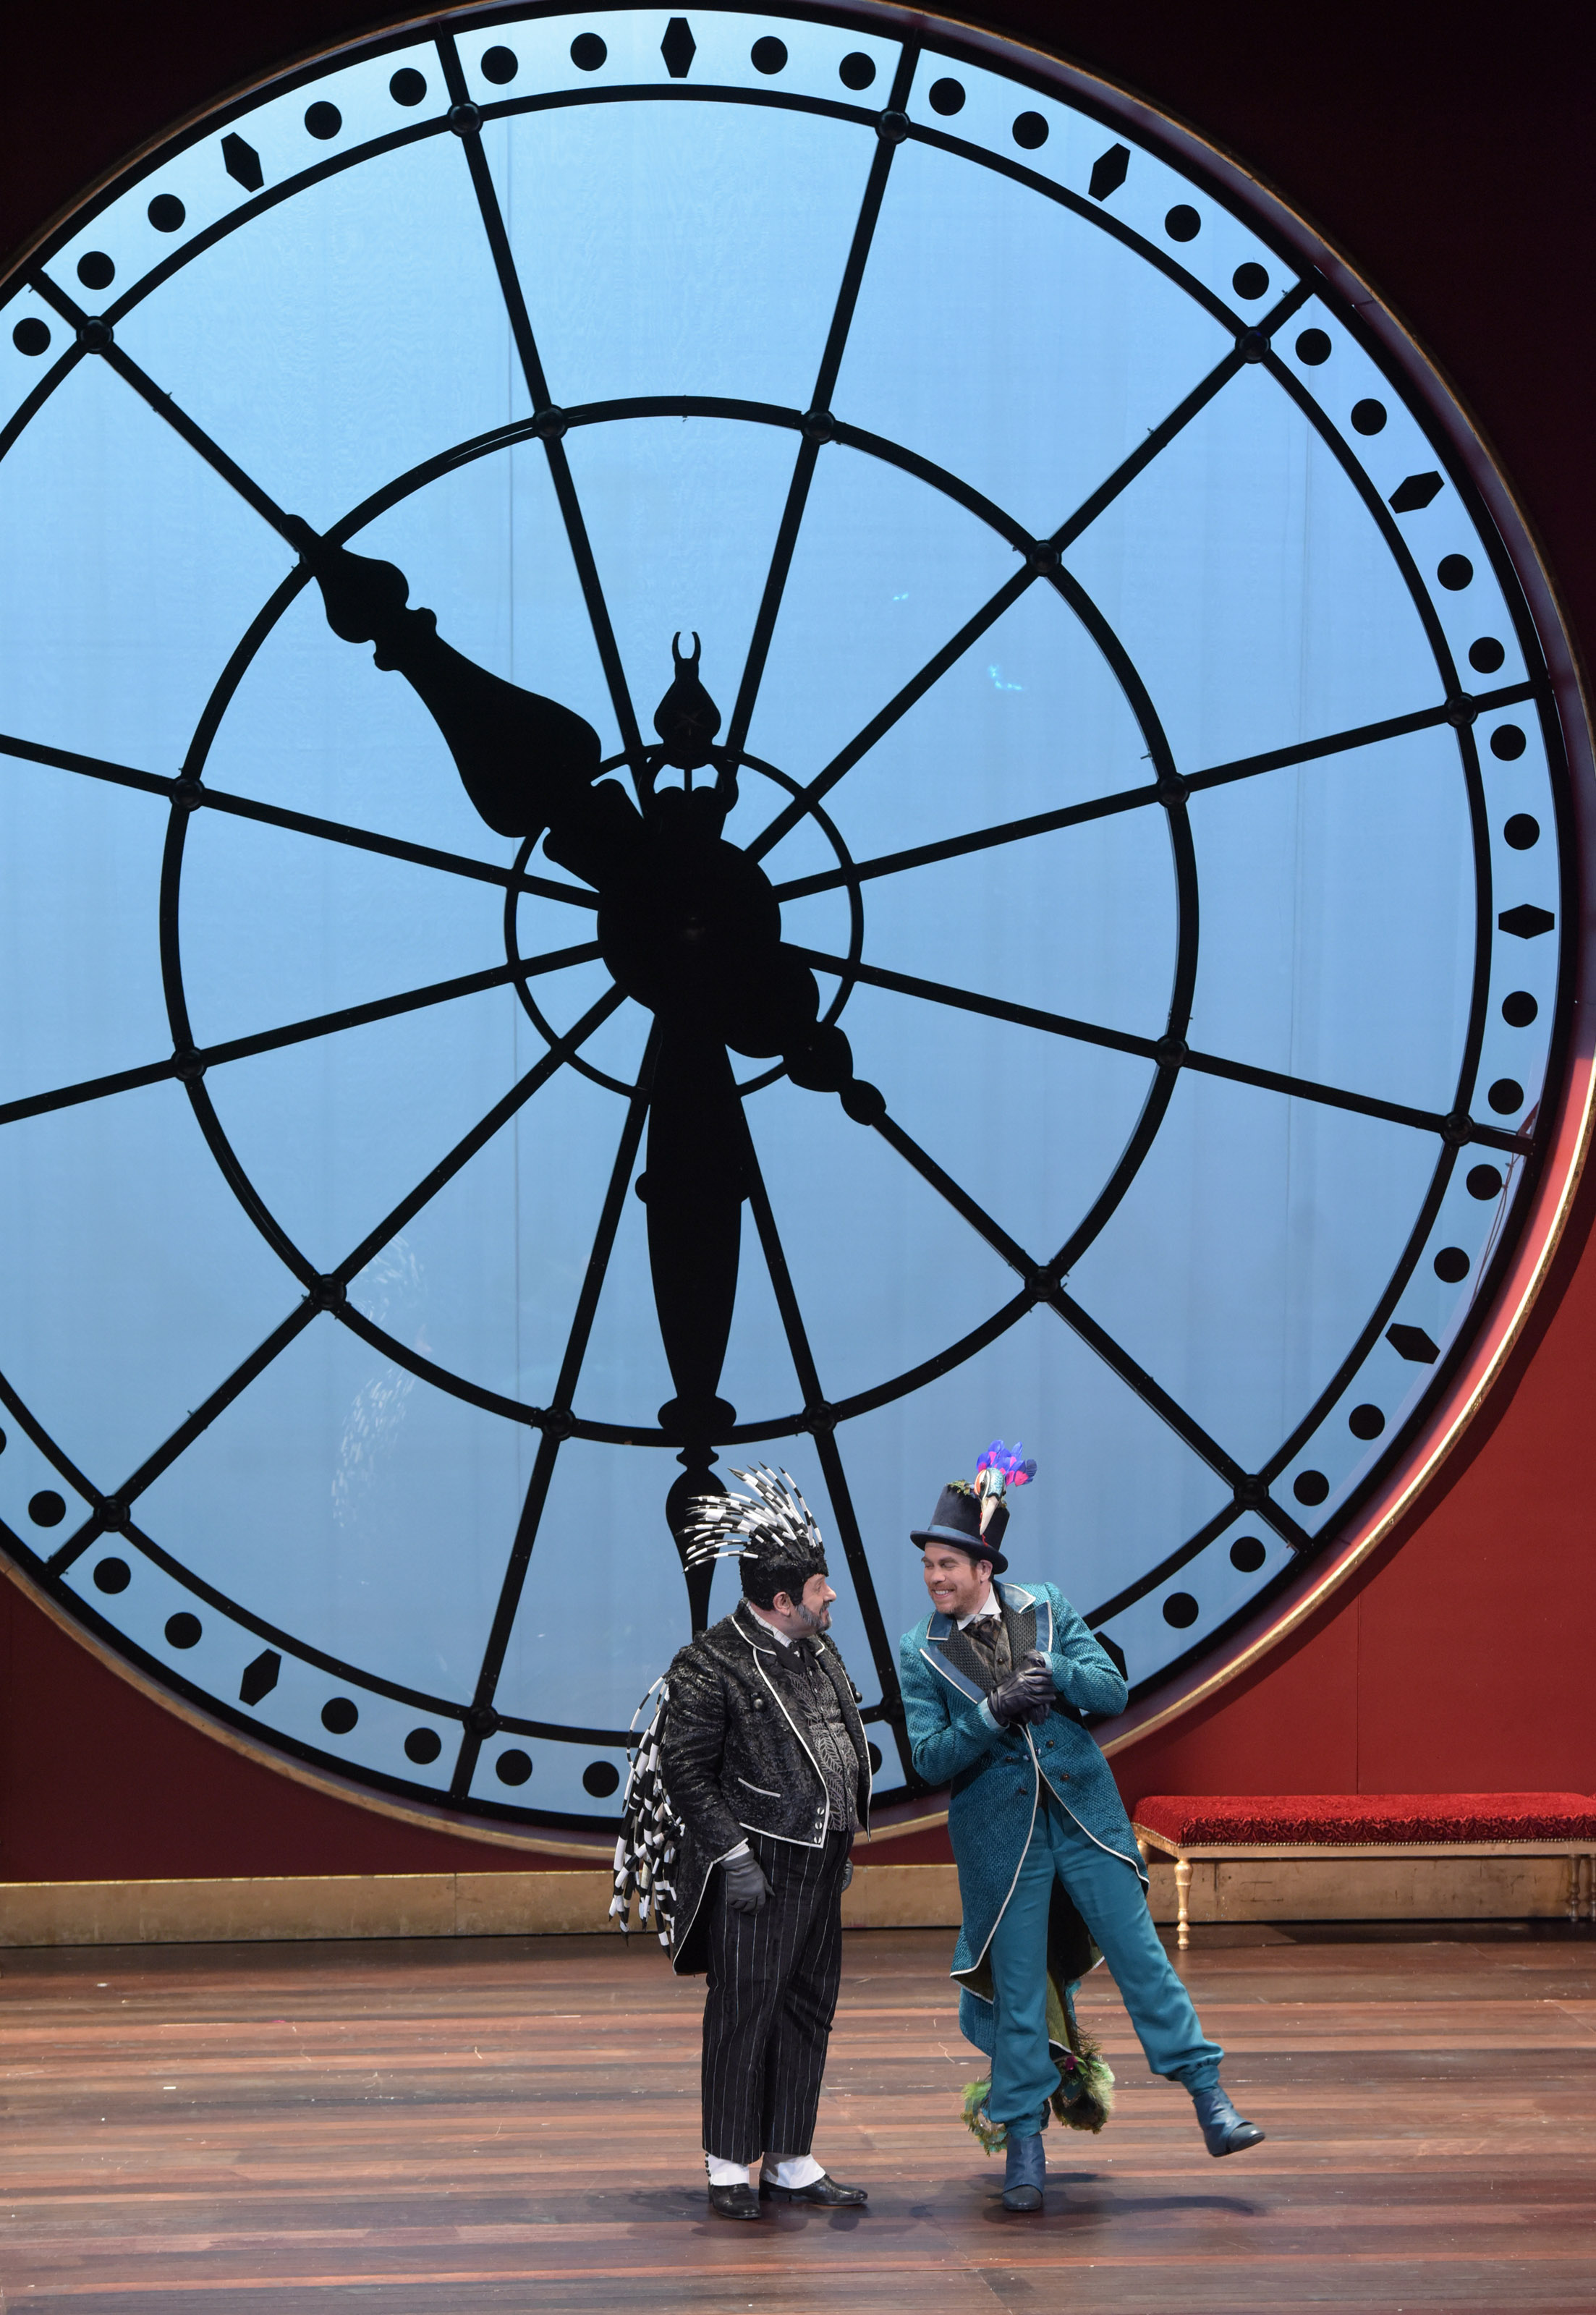 Descriptif de la photo: Devant une horloge murale géante, deux personnages avec chapeau semblent dialoguer.